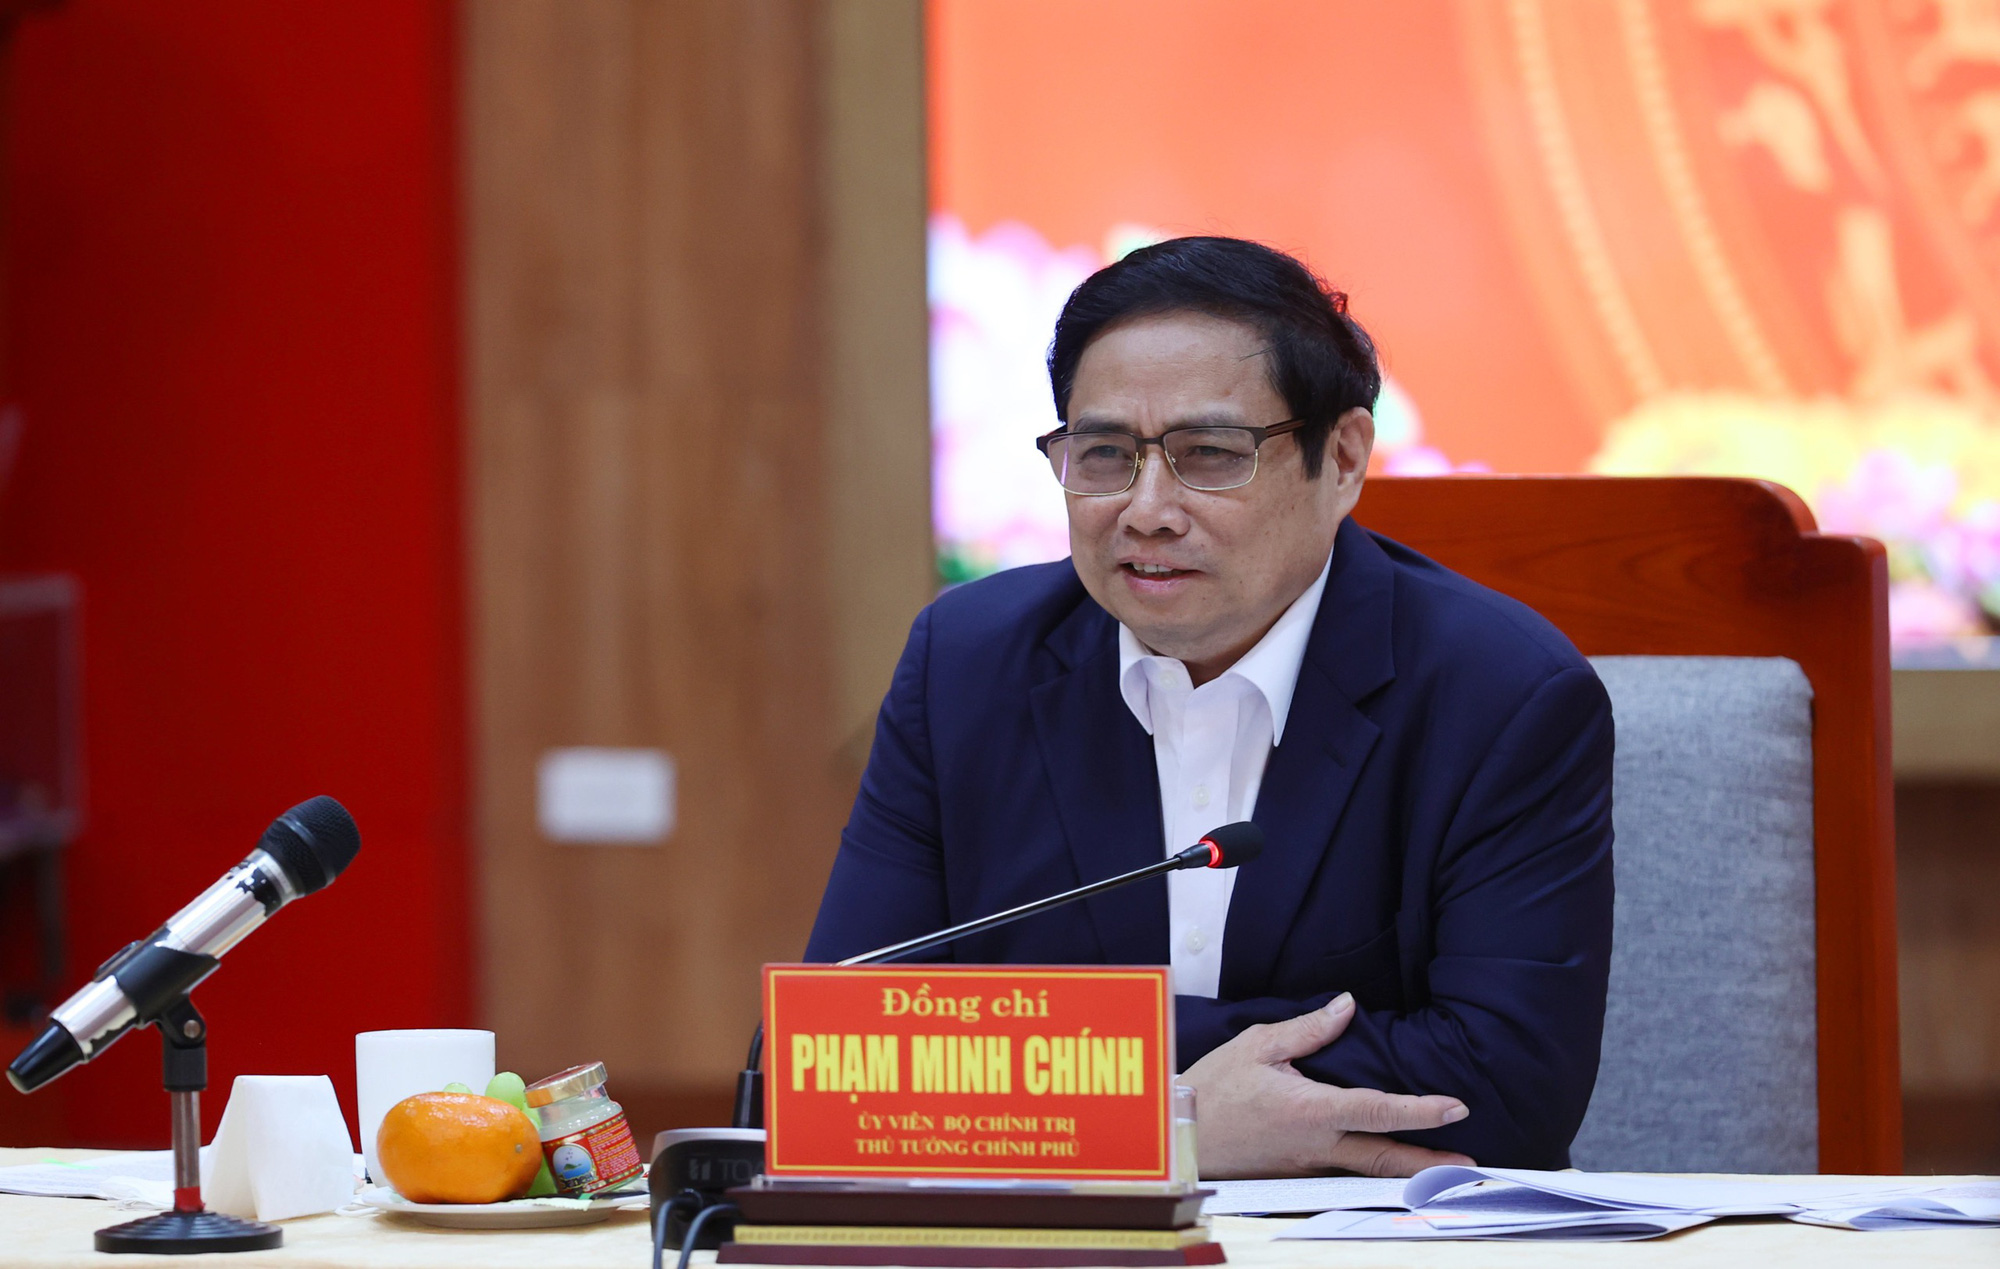 Thủ tướng Chính phủ Phạm Minh Chính làm việc với Ban Thường vụ Tỉnh ủy Khánh Hòa về tình hình thực hiện nhiệm vụ phát triển kinh tế - xã hội, công tác xây dựng Đảng và hệ thống chính trị năm 2021, phương hướng, nhiệm vụ năm 2022.